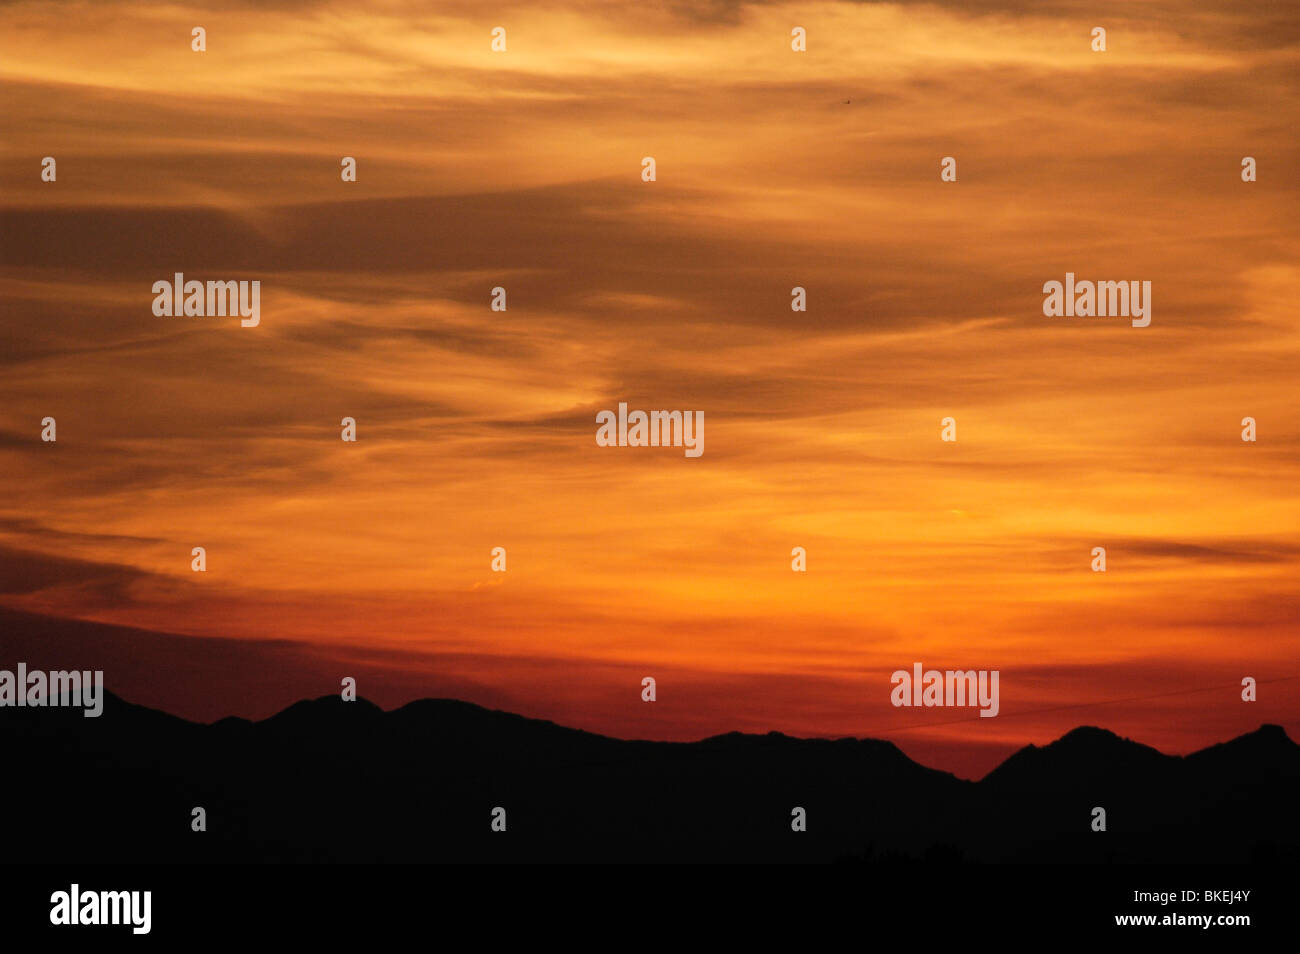 Sunset image Stock Photo